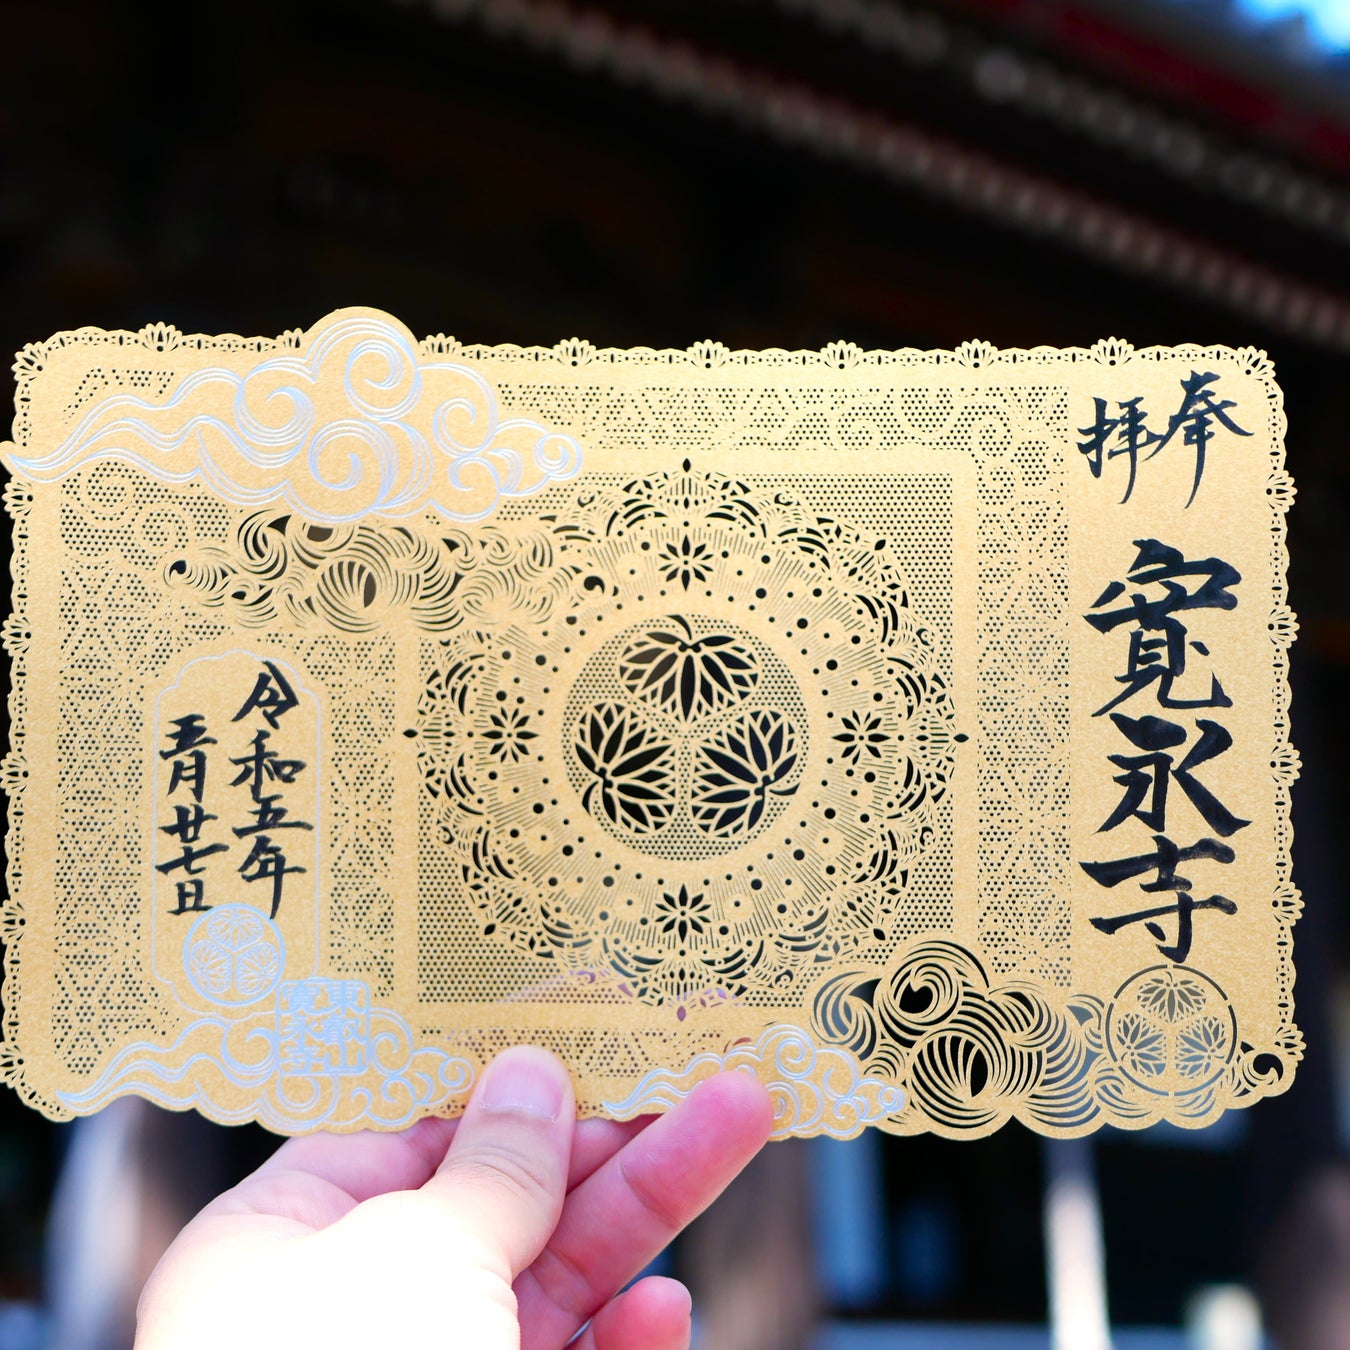 琵琶湖畔で野外音楽イベント「雨宿りには音楽を」が
2023年6月10日(土)、11日(日)に開催